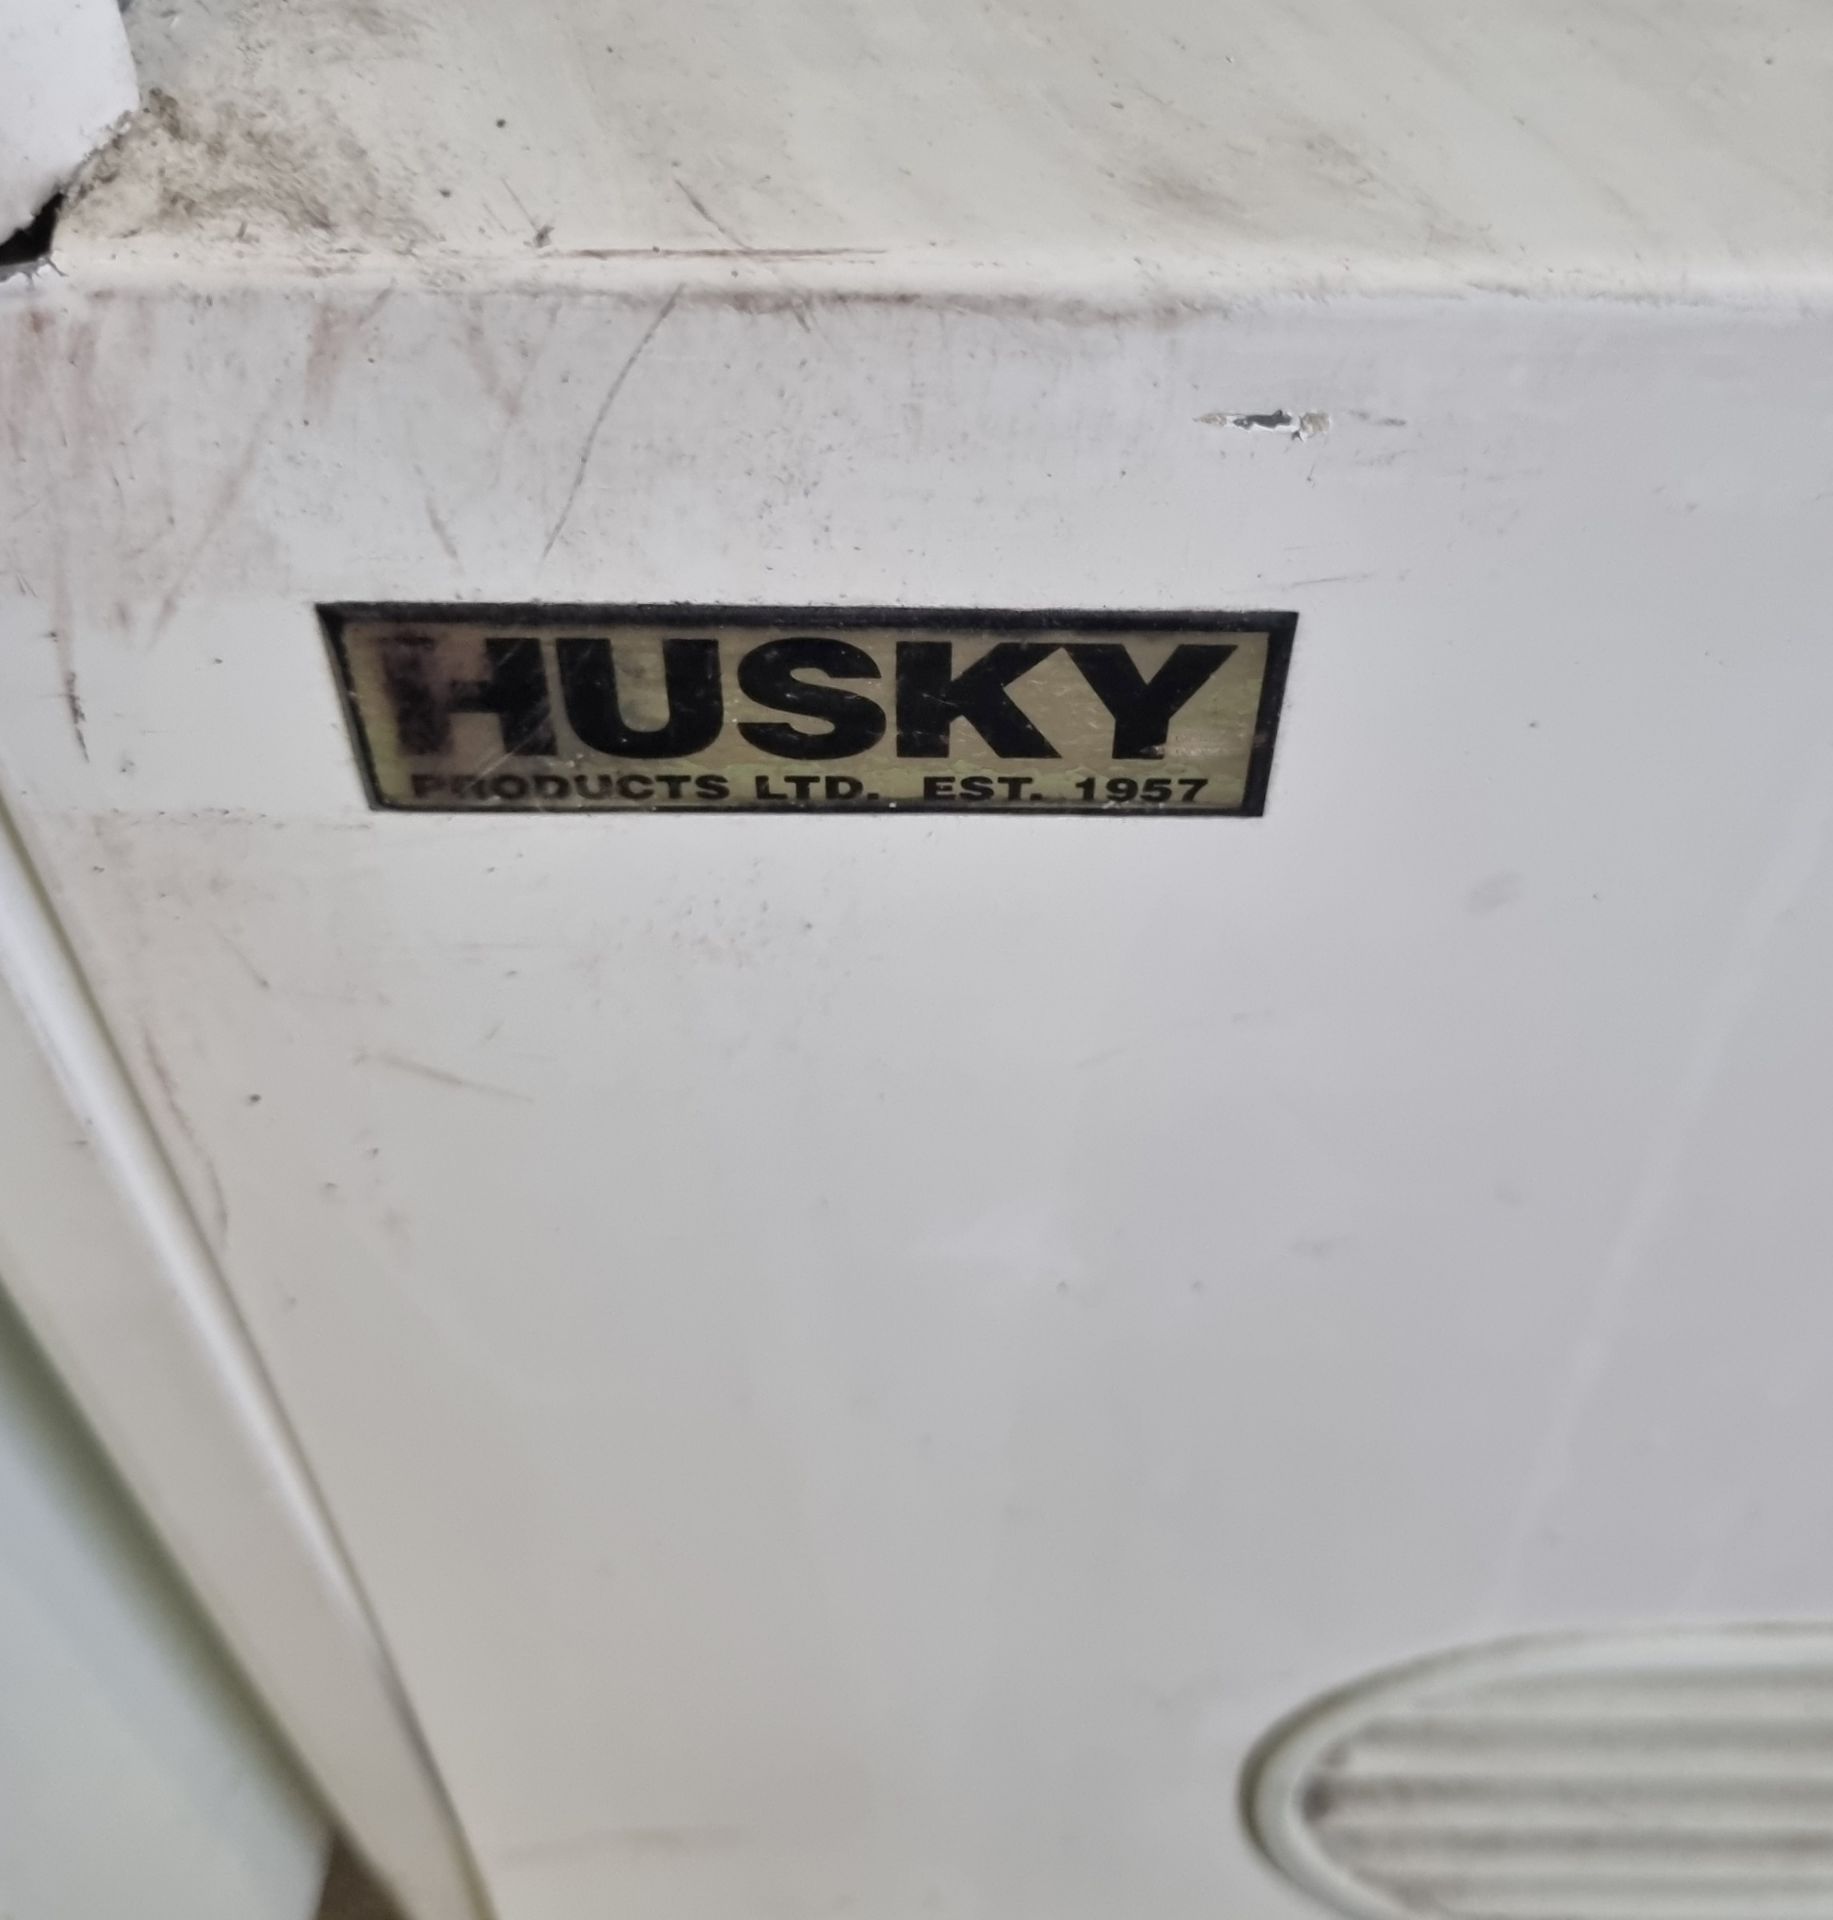 Husky MV13 open front chiller - 230V - 50Hz - Image 3 of 5